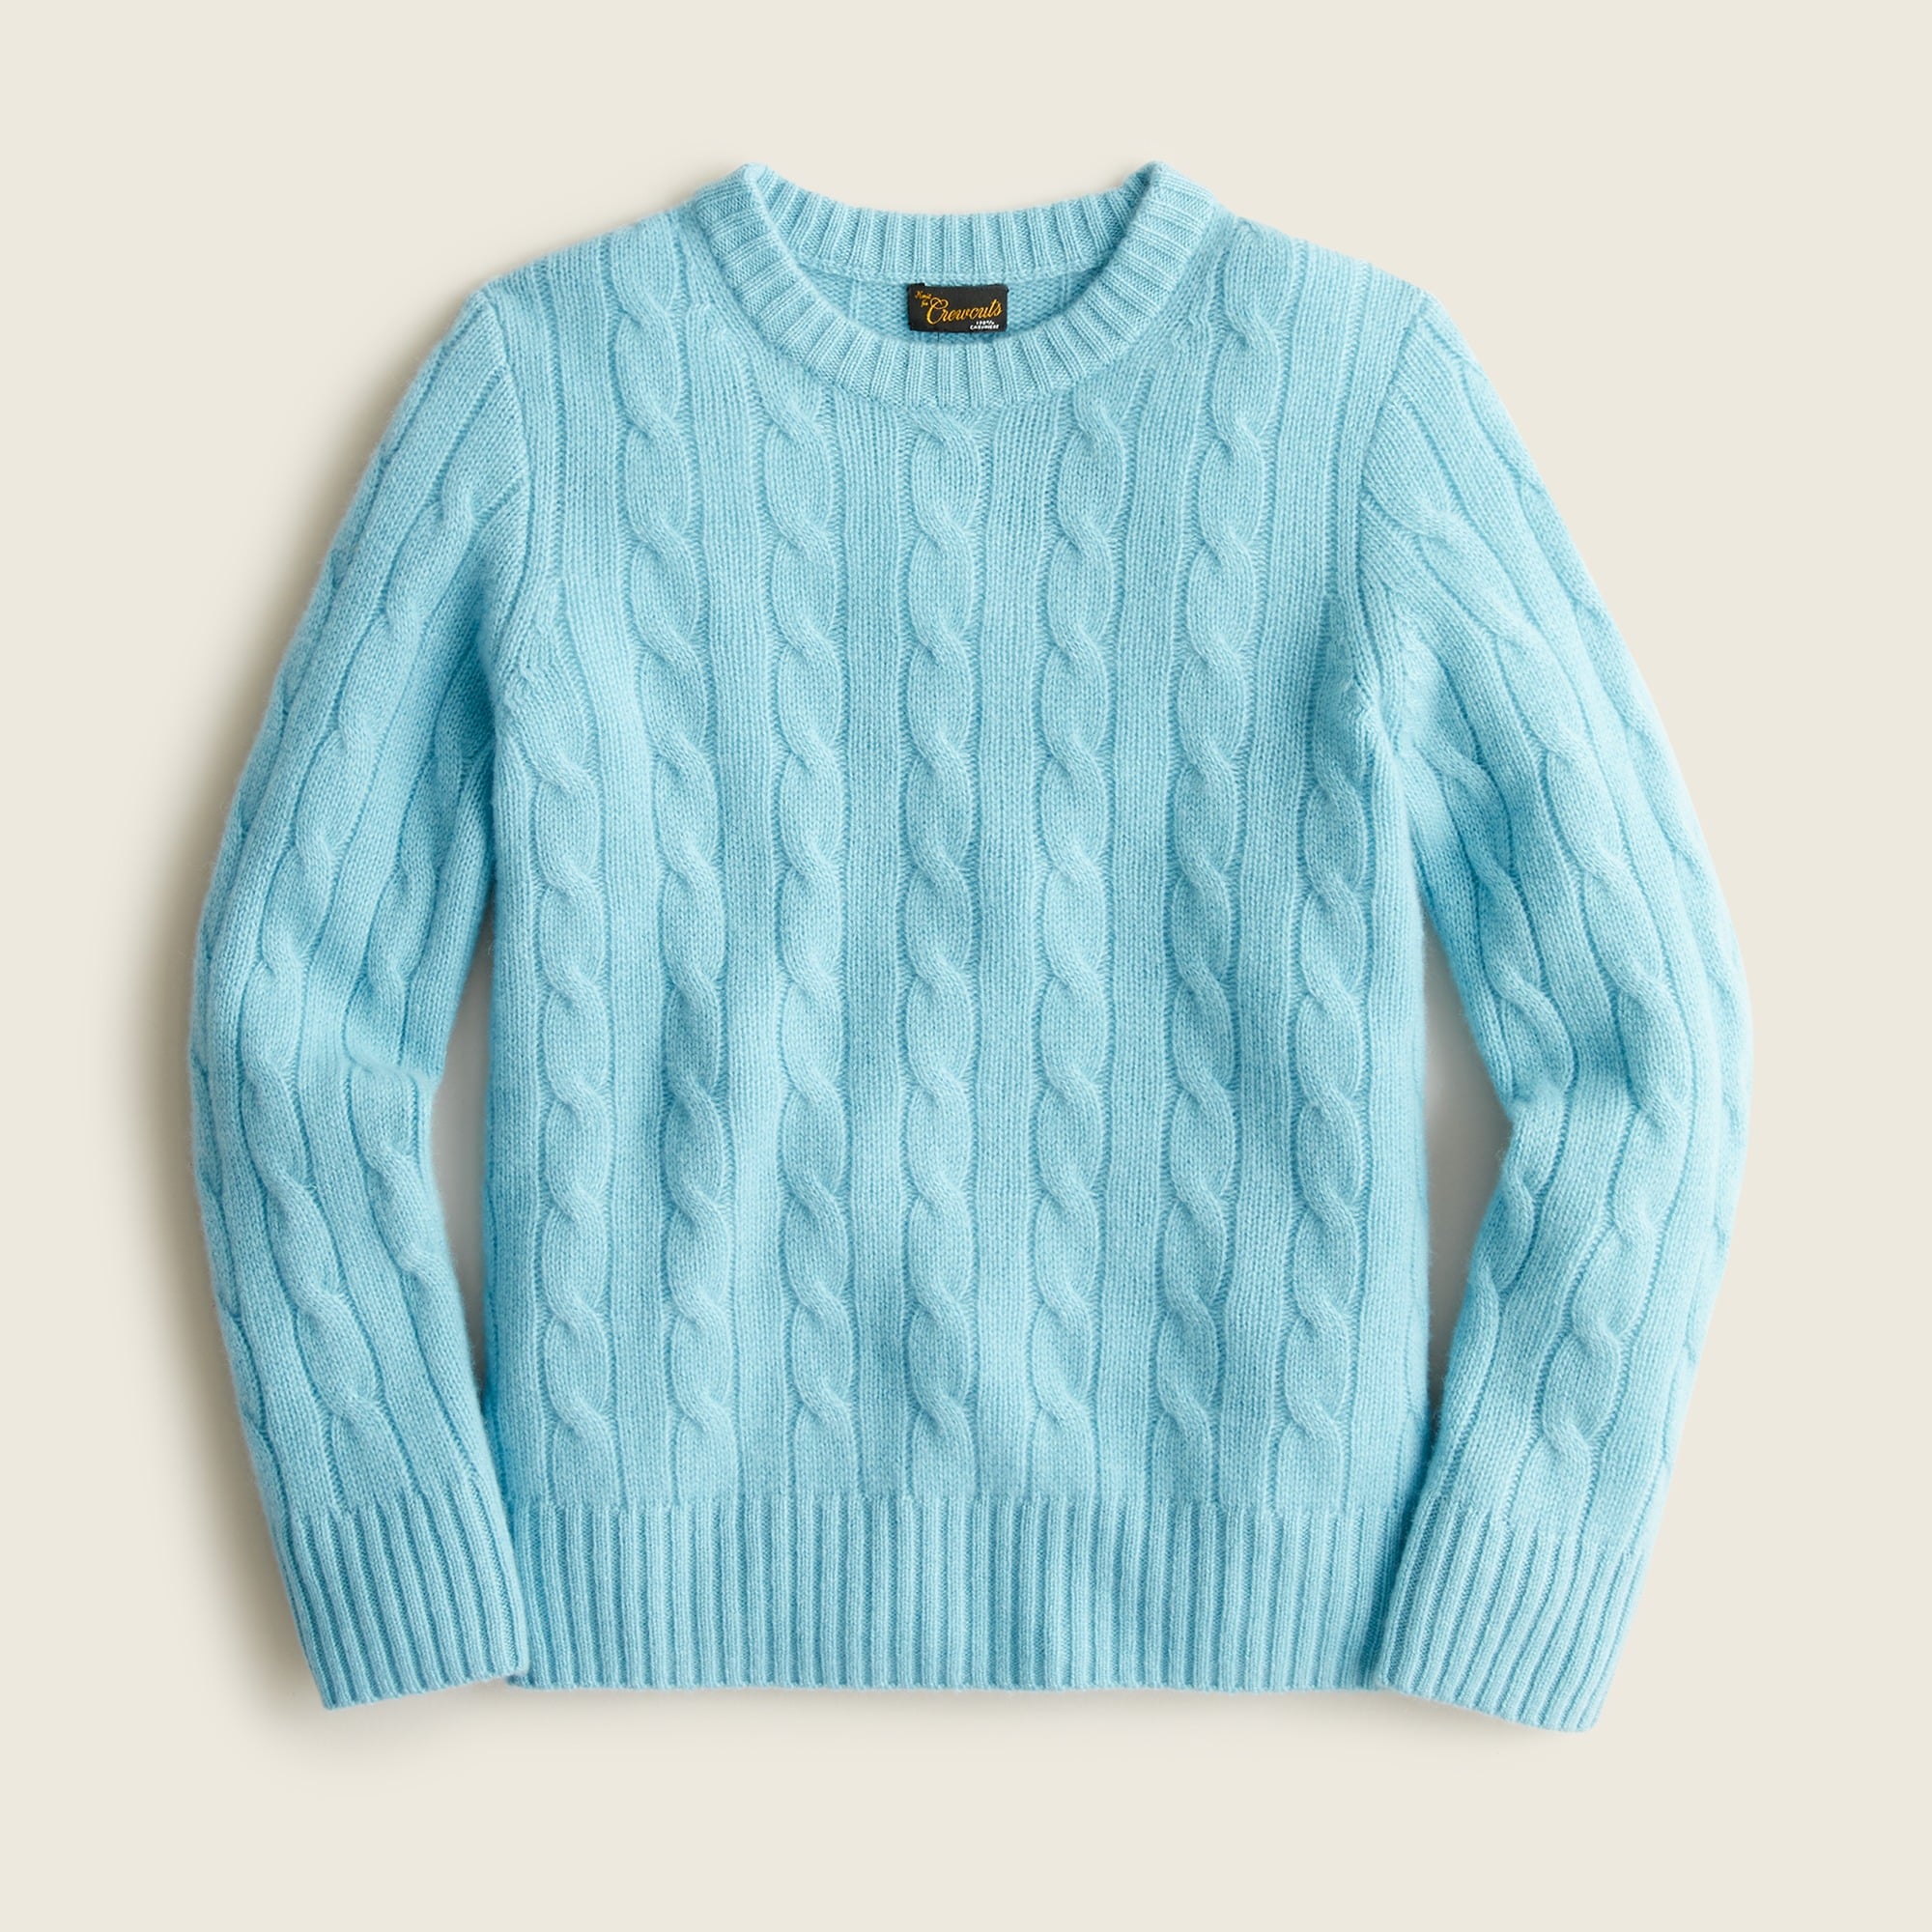 제이크루 보이즈 스웨터 J.crew Boys cable-knit cashmere crewneck sweater,PORTICO BLUE